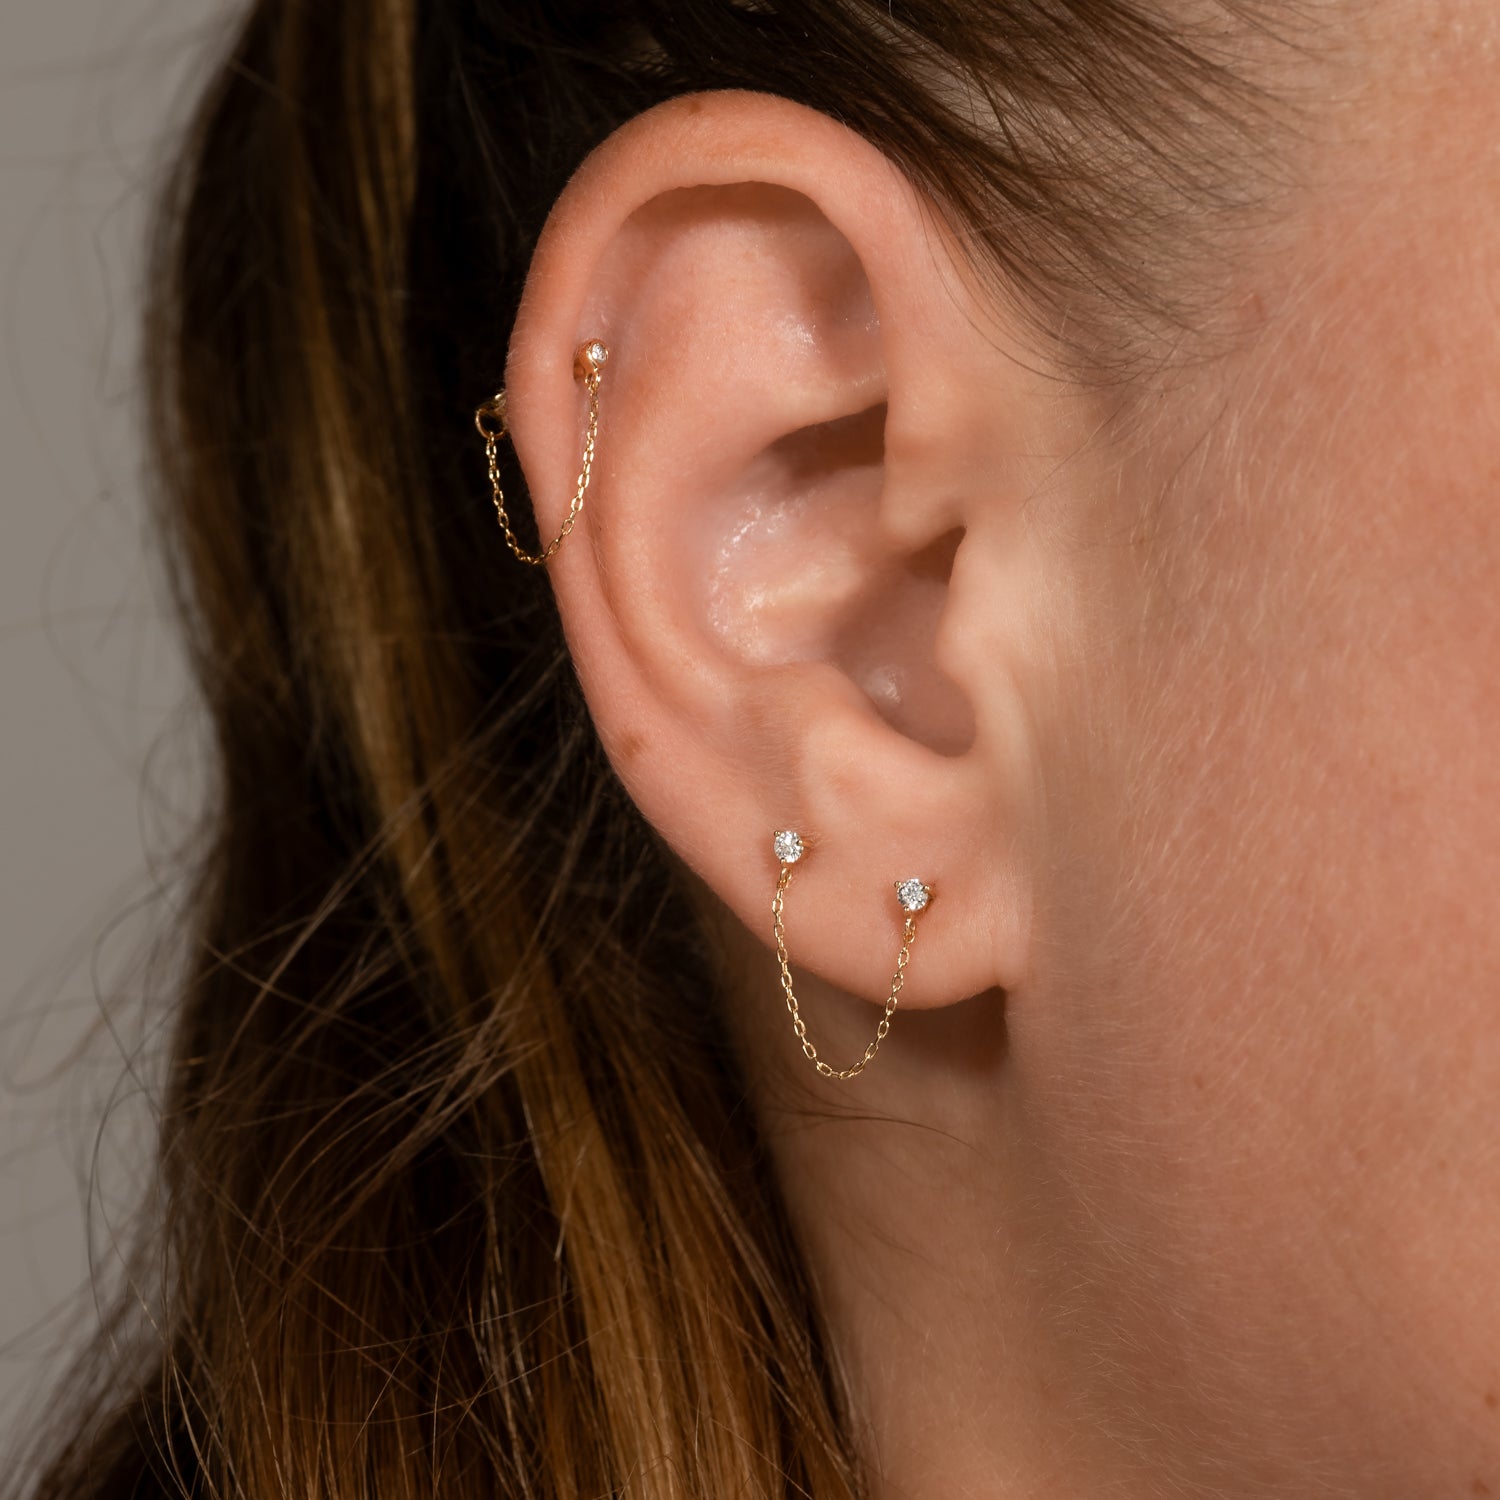 14K Solid Gold Ball Stud Earrings 3mm – J&CO Jewellery